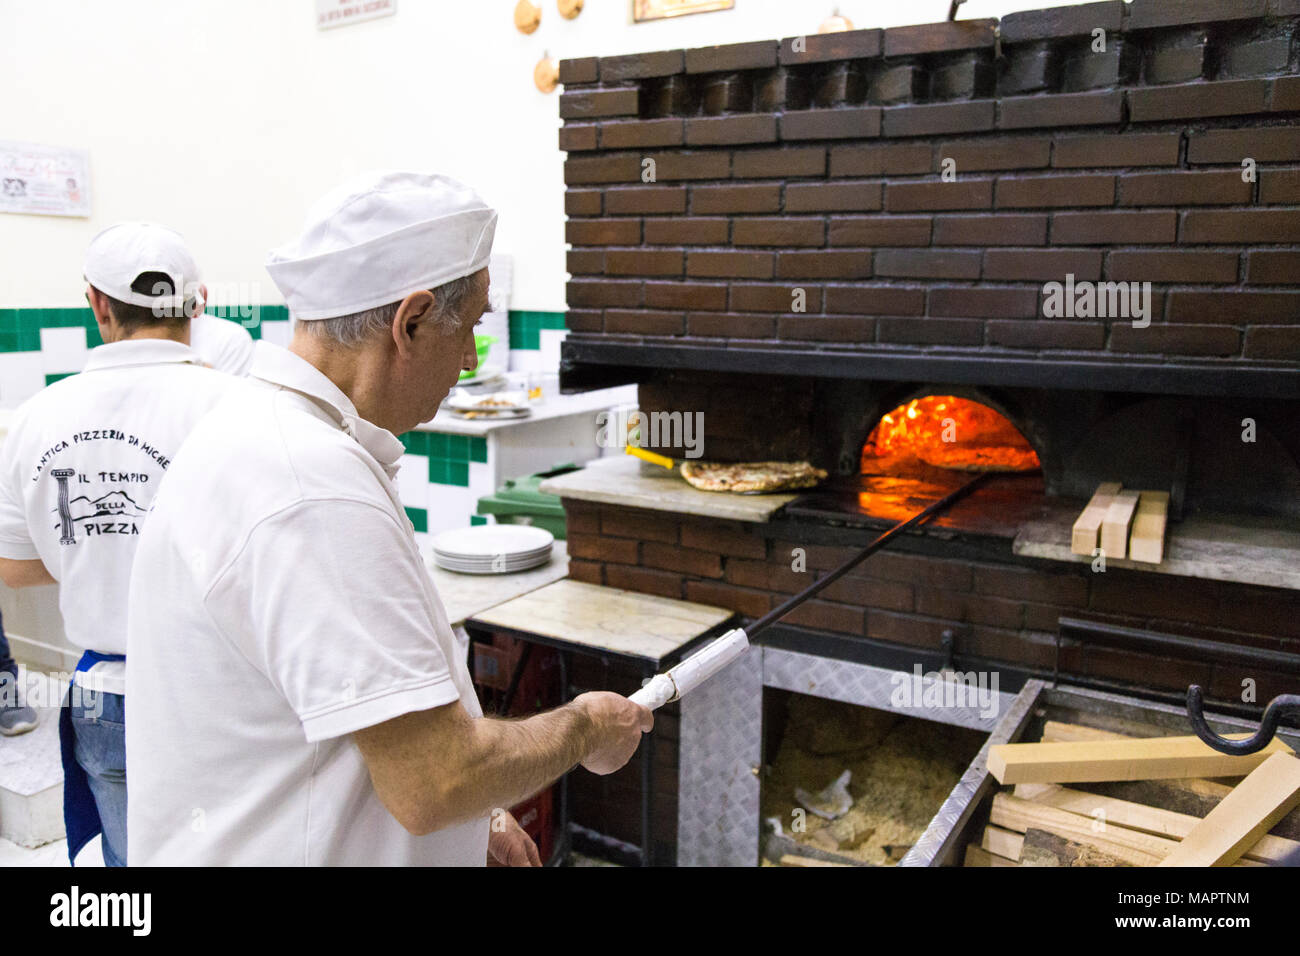 Uomo di cucina italiana tradizionale pizza nel forno a legna presso l'antica pizzeria da Michele, Napoli, Italia Foto Stock